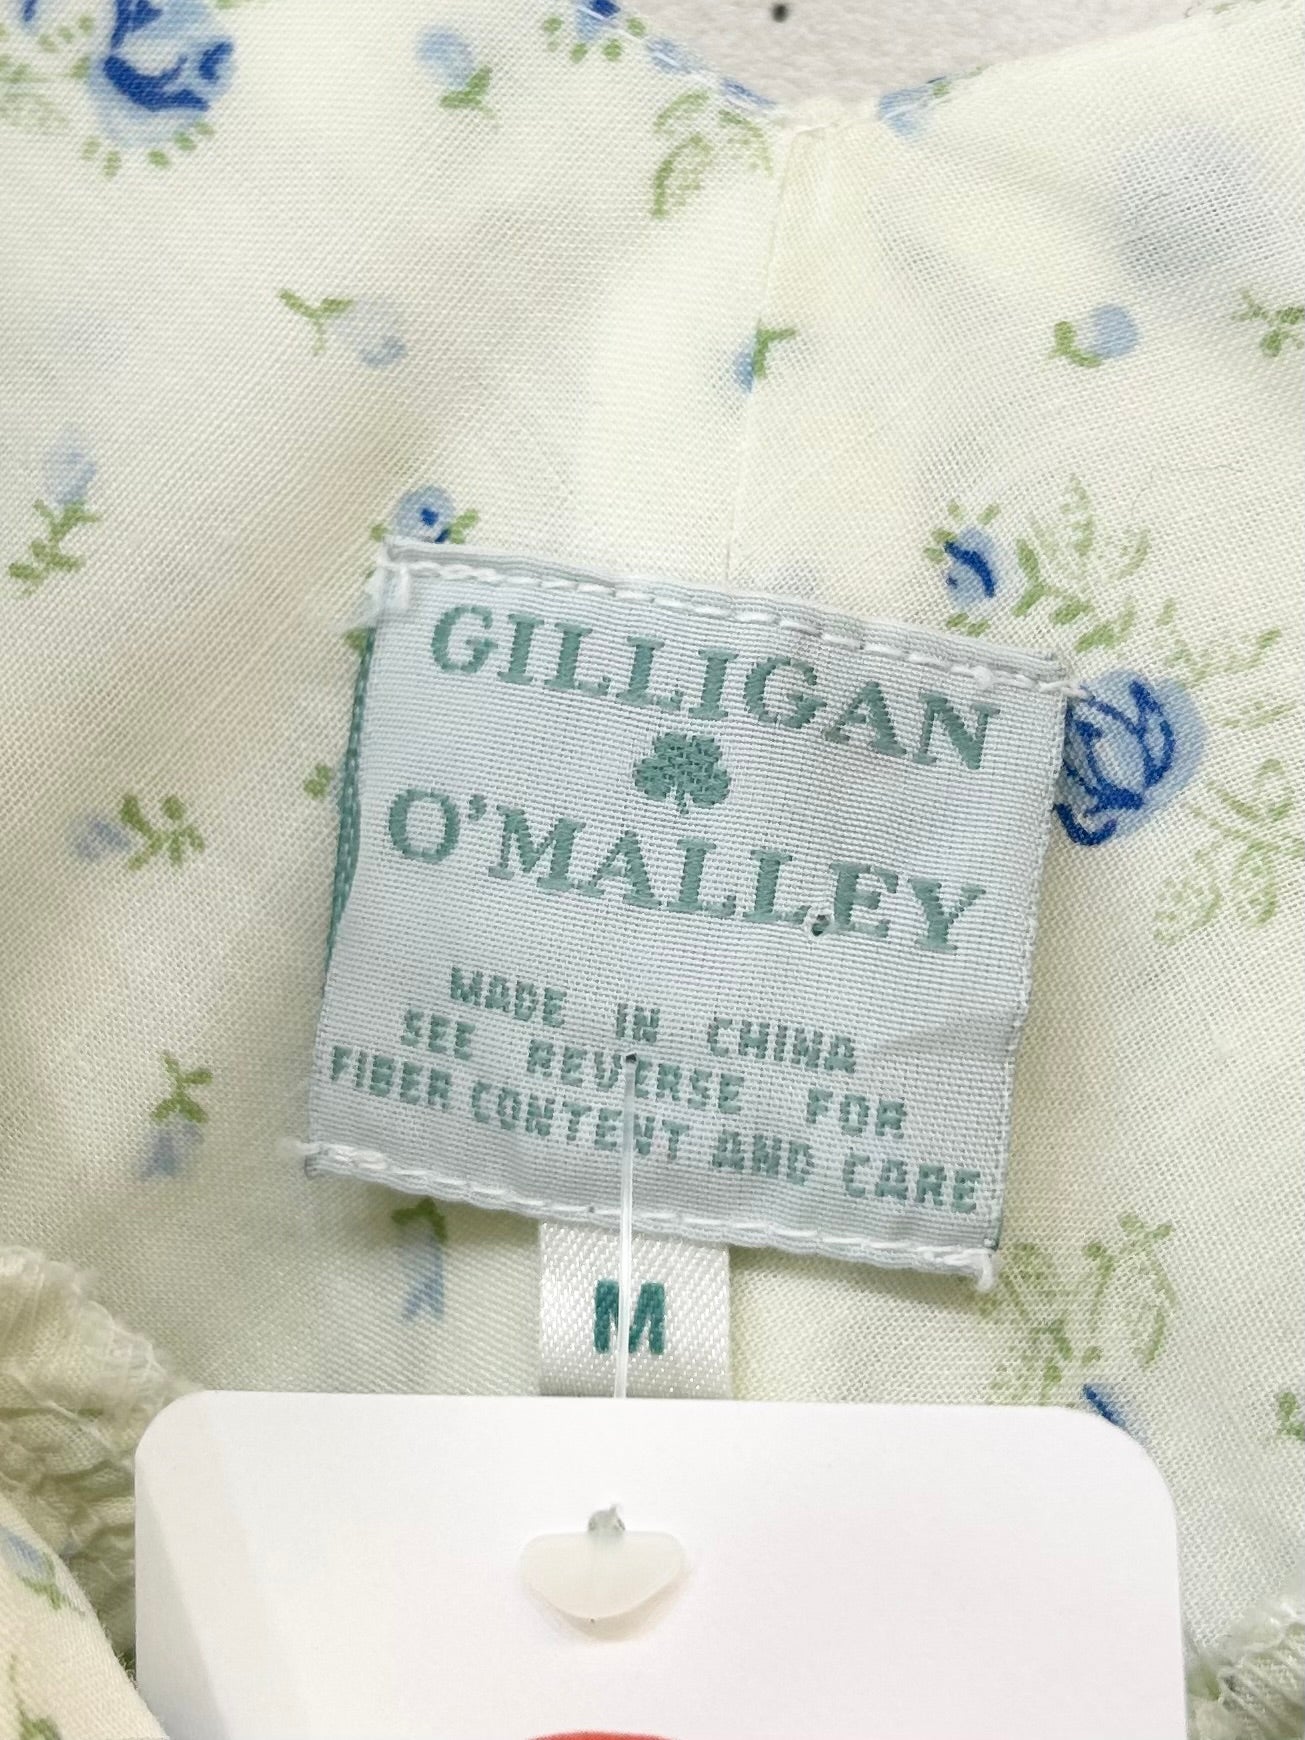 Vintage Flower Dress 〜Gilligan O'Malley〜[C26555]